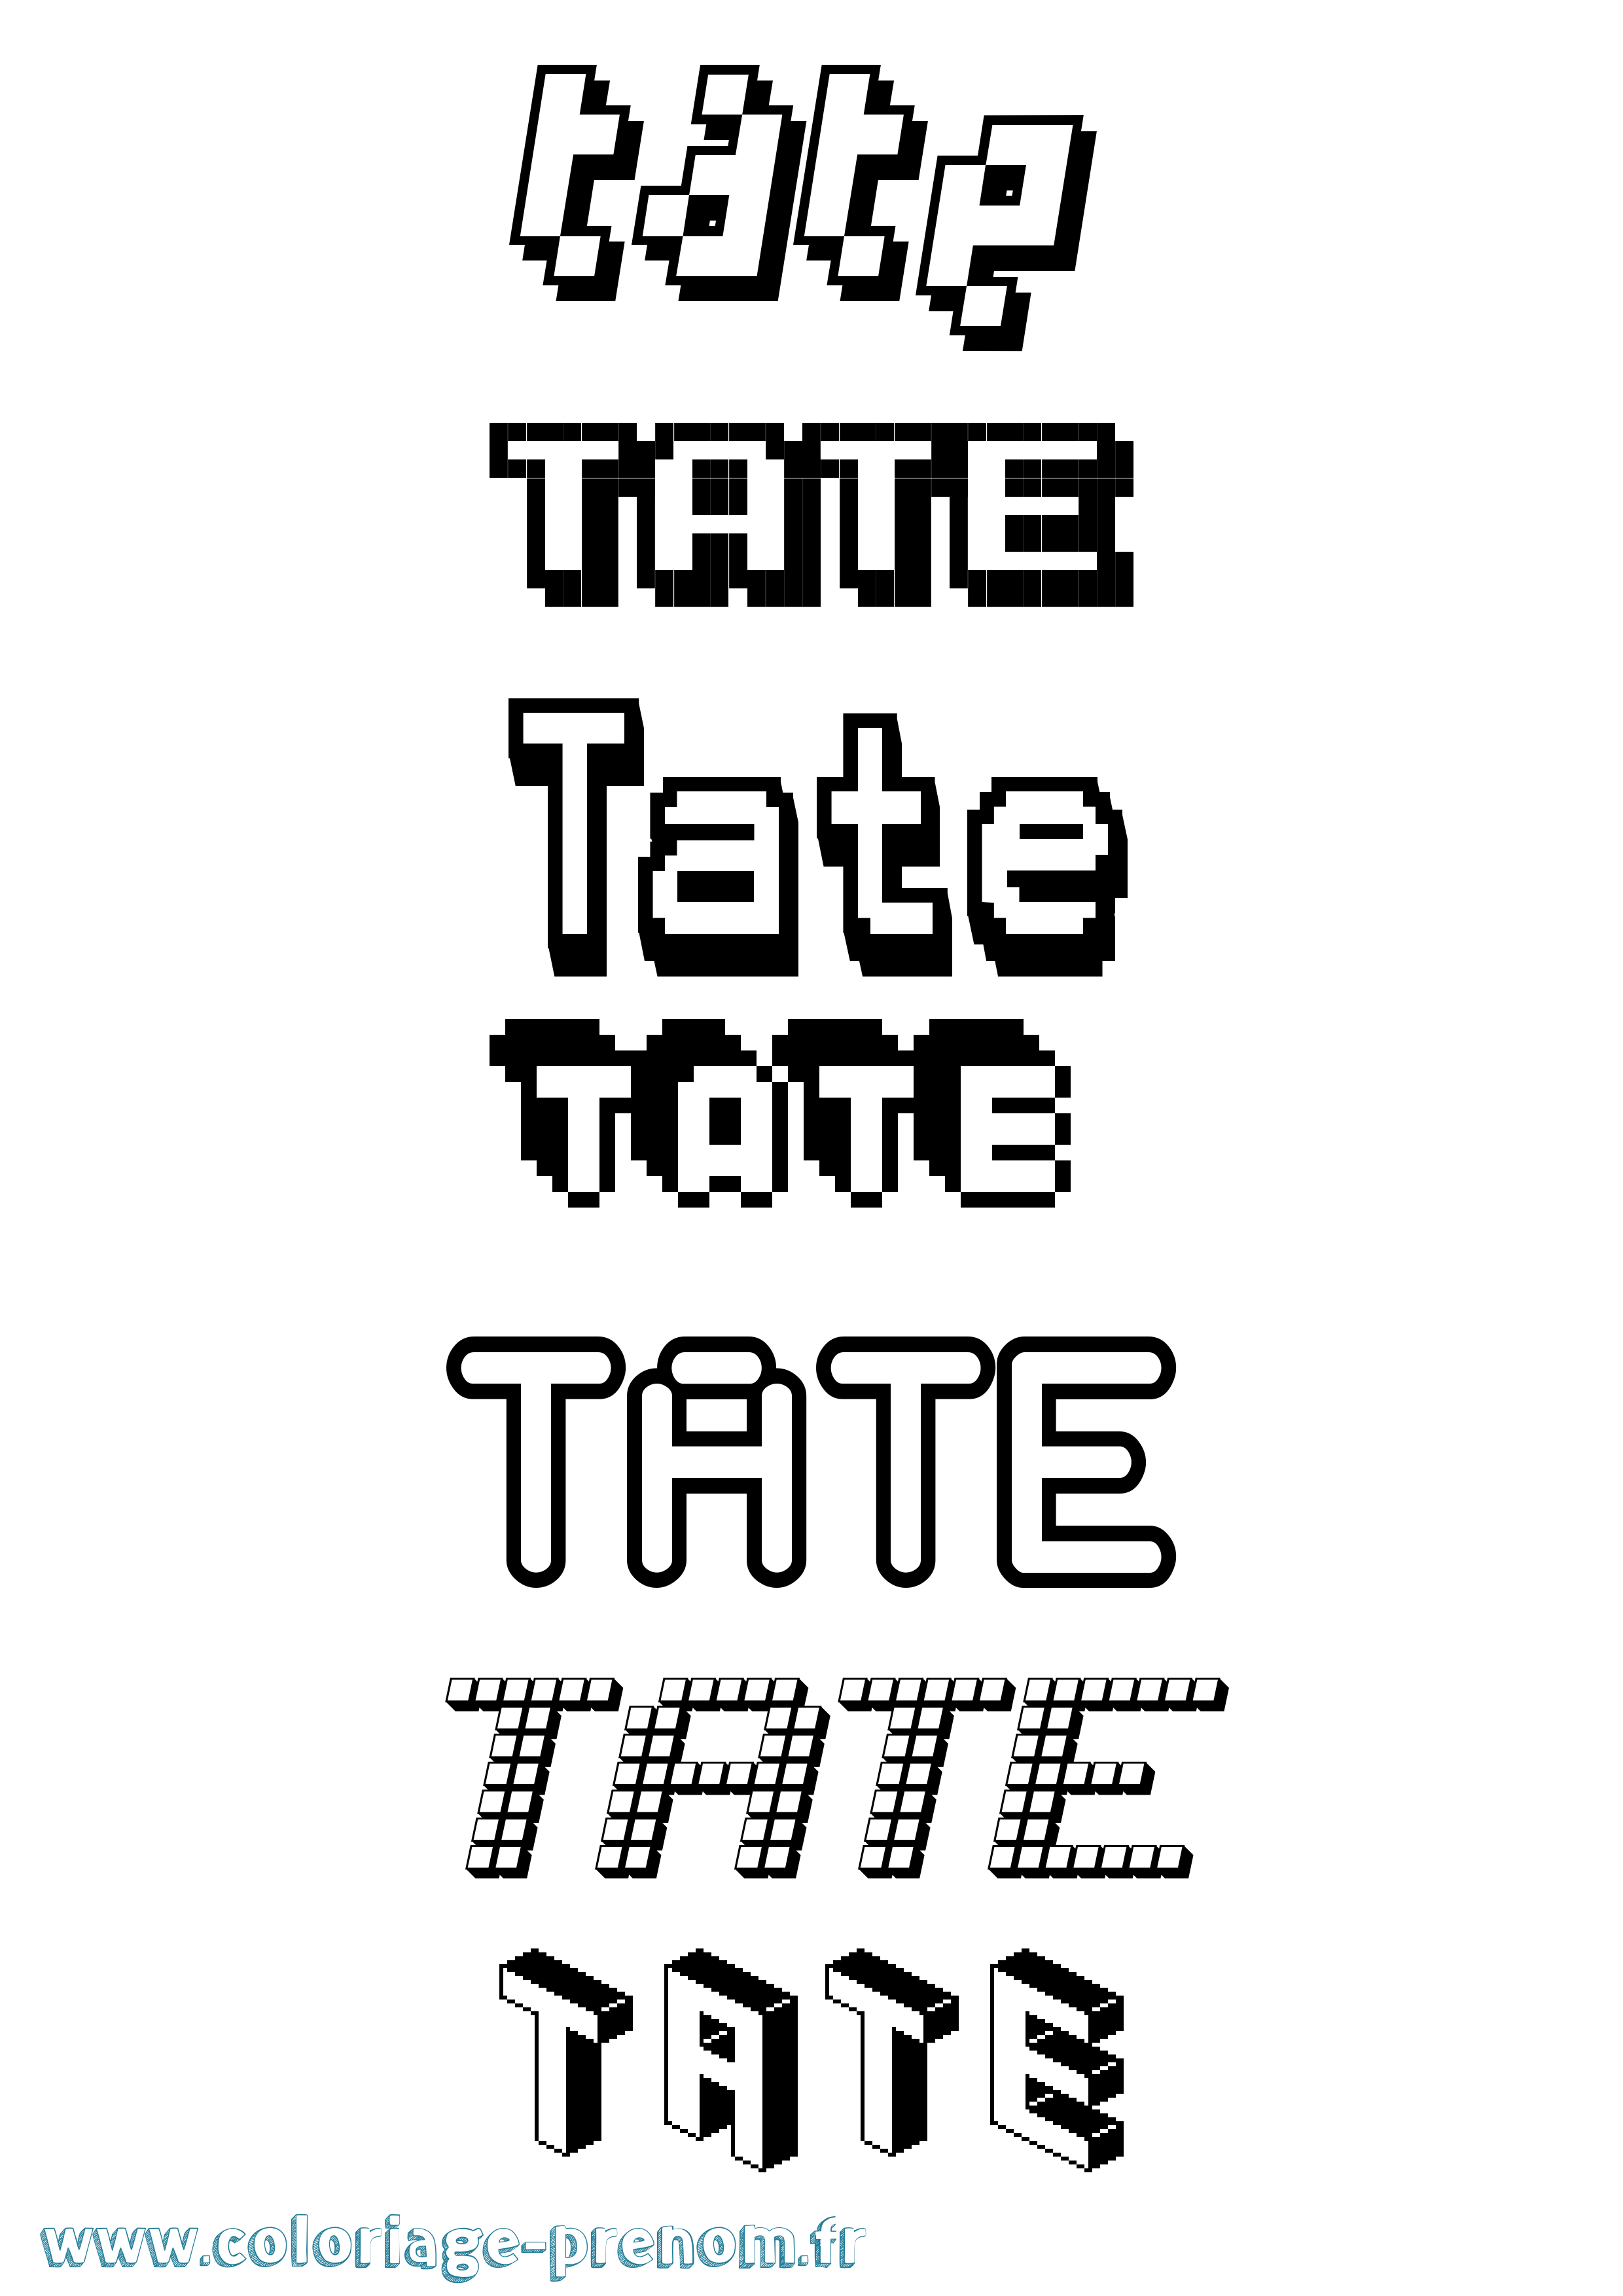 Coloriage prénom Tate Pixel